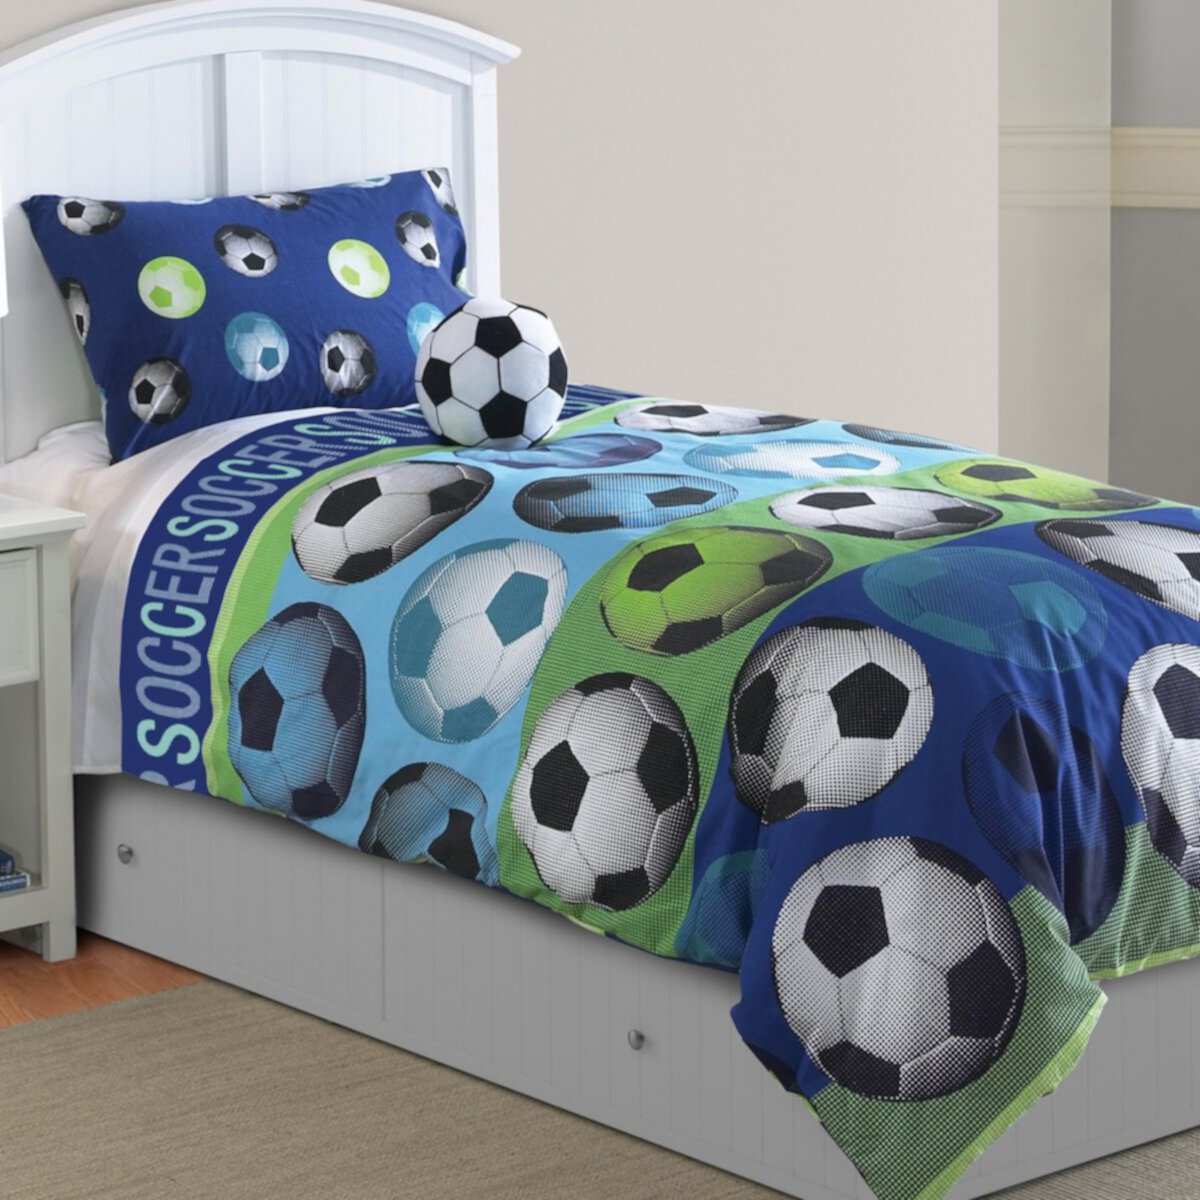 Soccer Comforter Set Unbranded